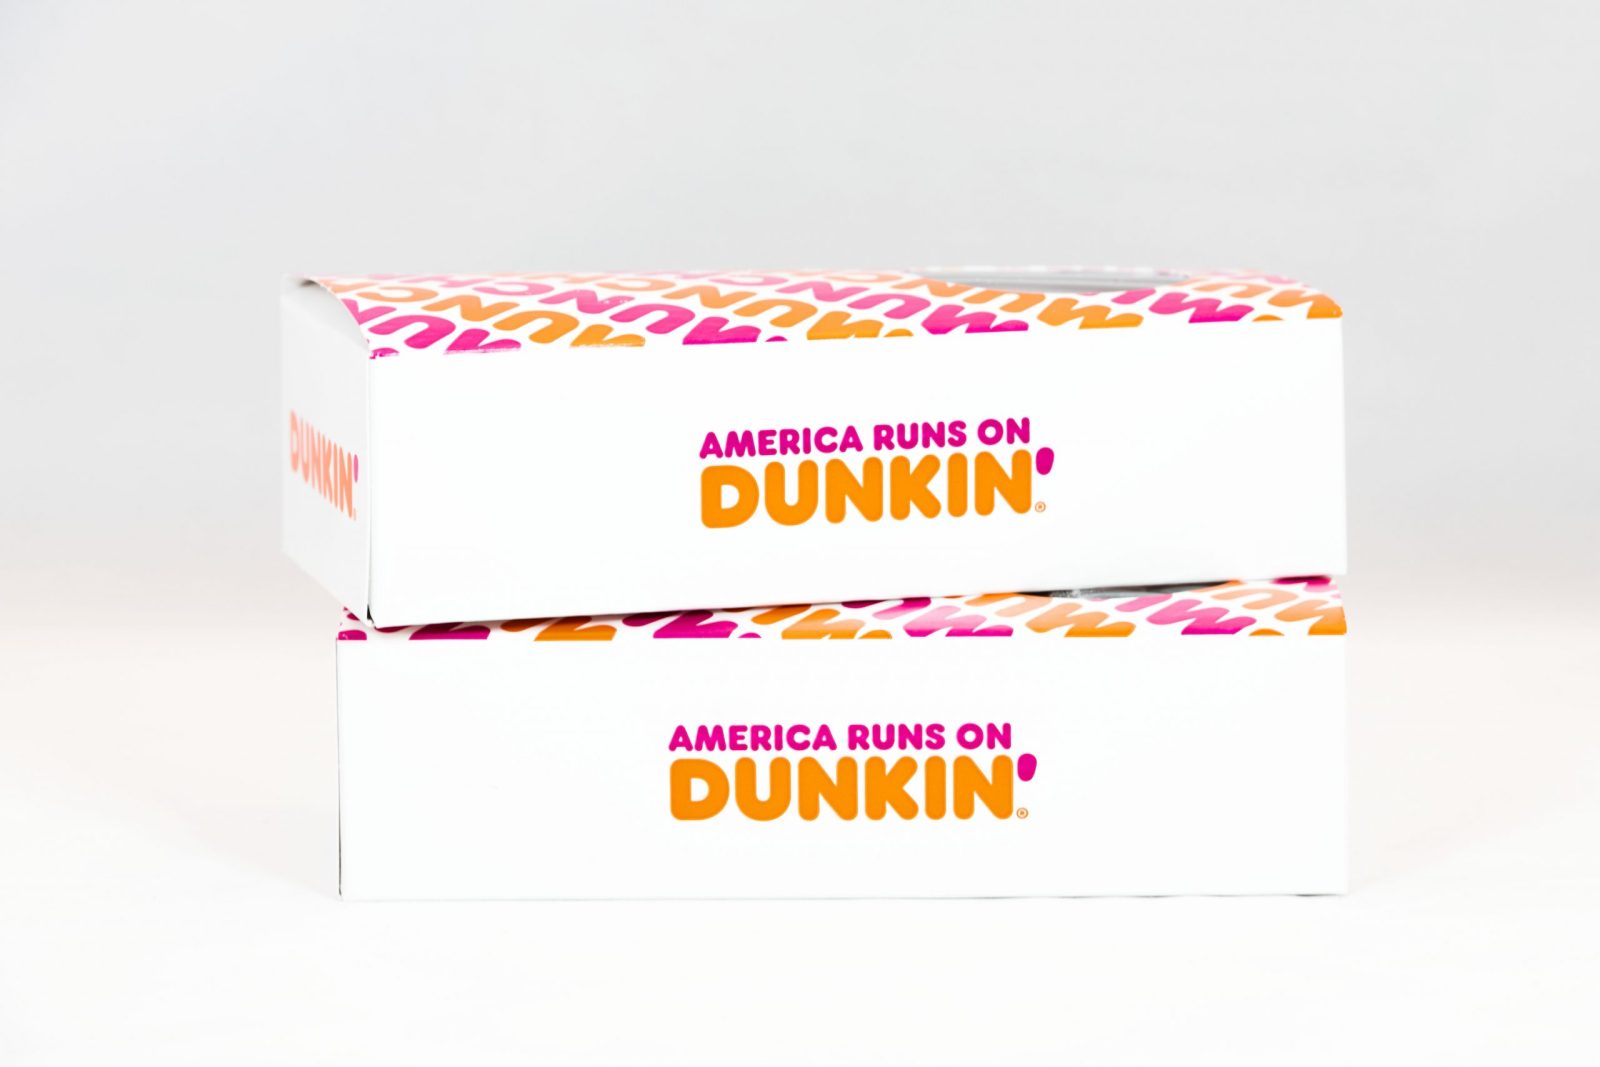 Dunkin’ Summer Menu #2 The Sequel